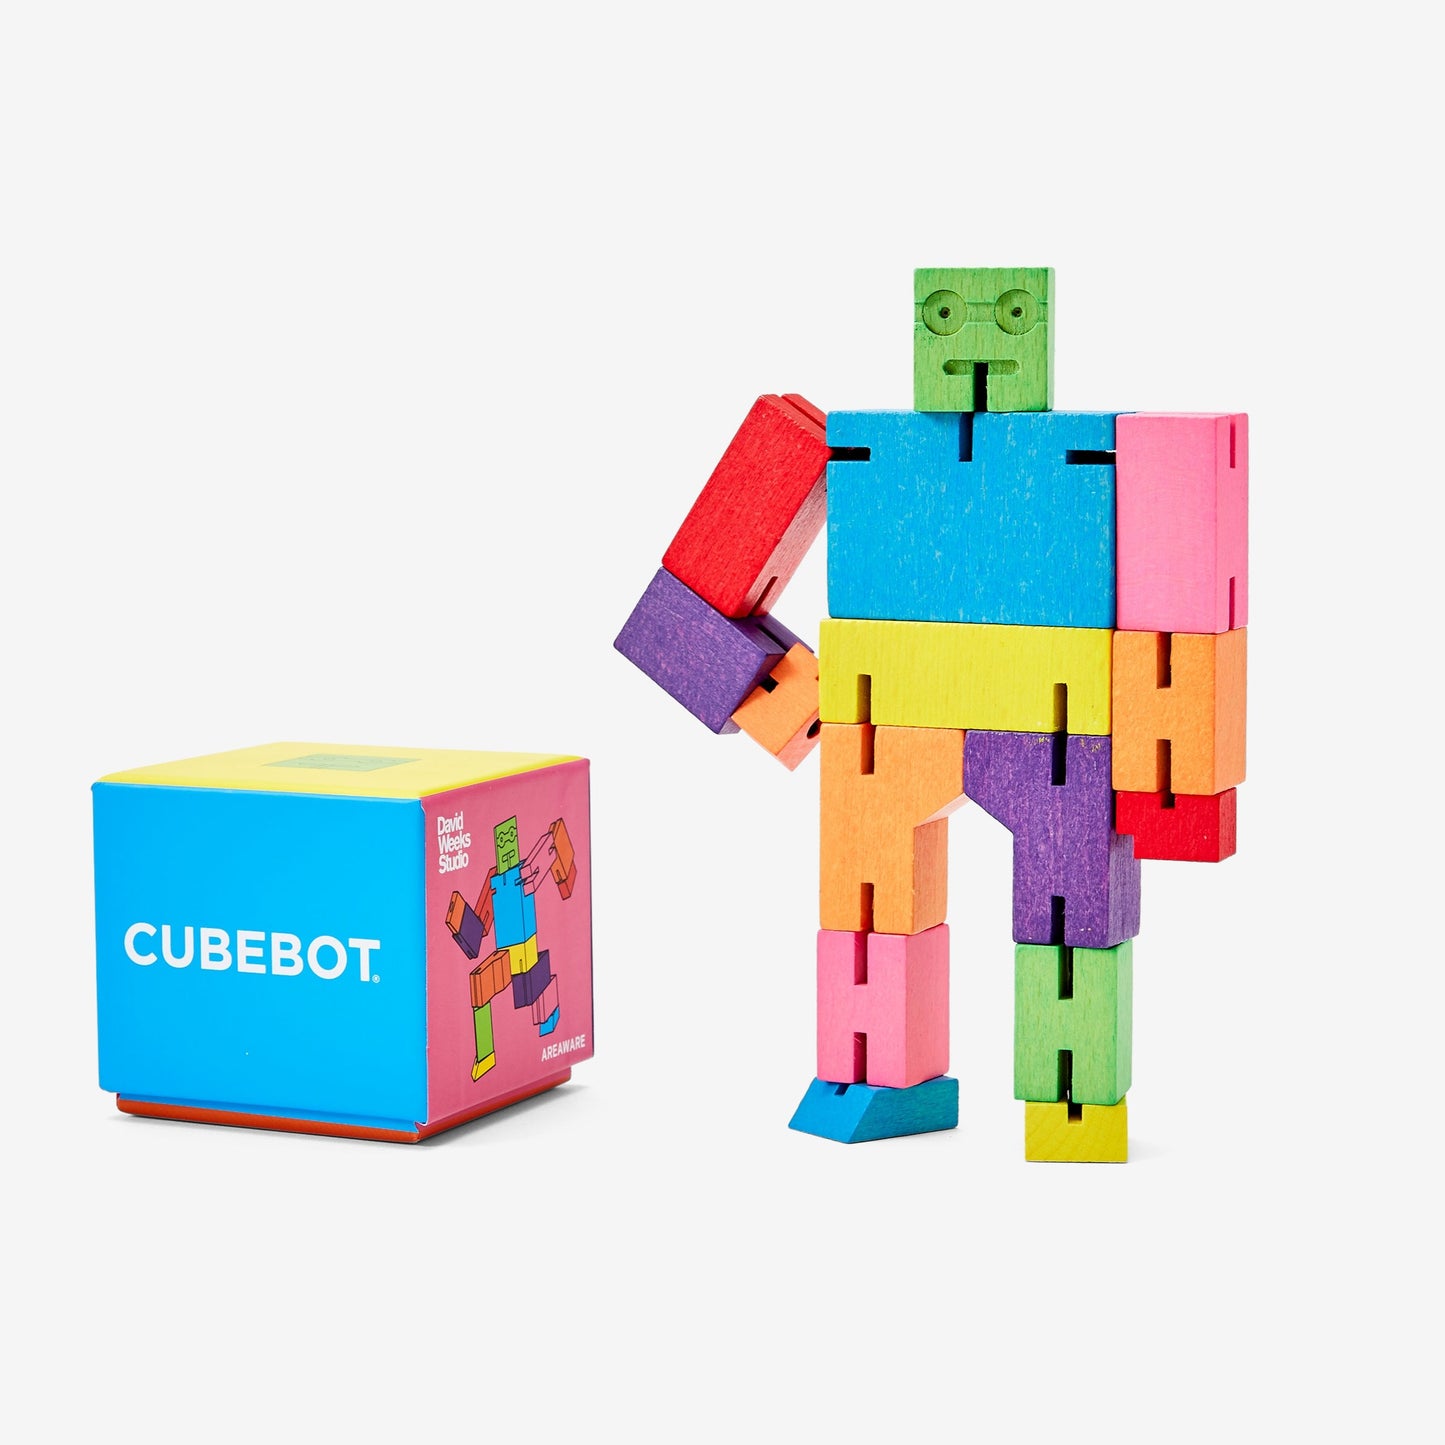 Areaware - David Weeks - Cubebot Klein